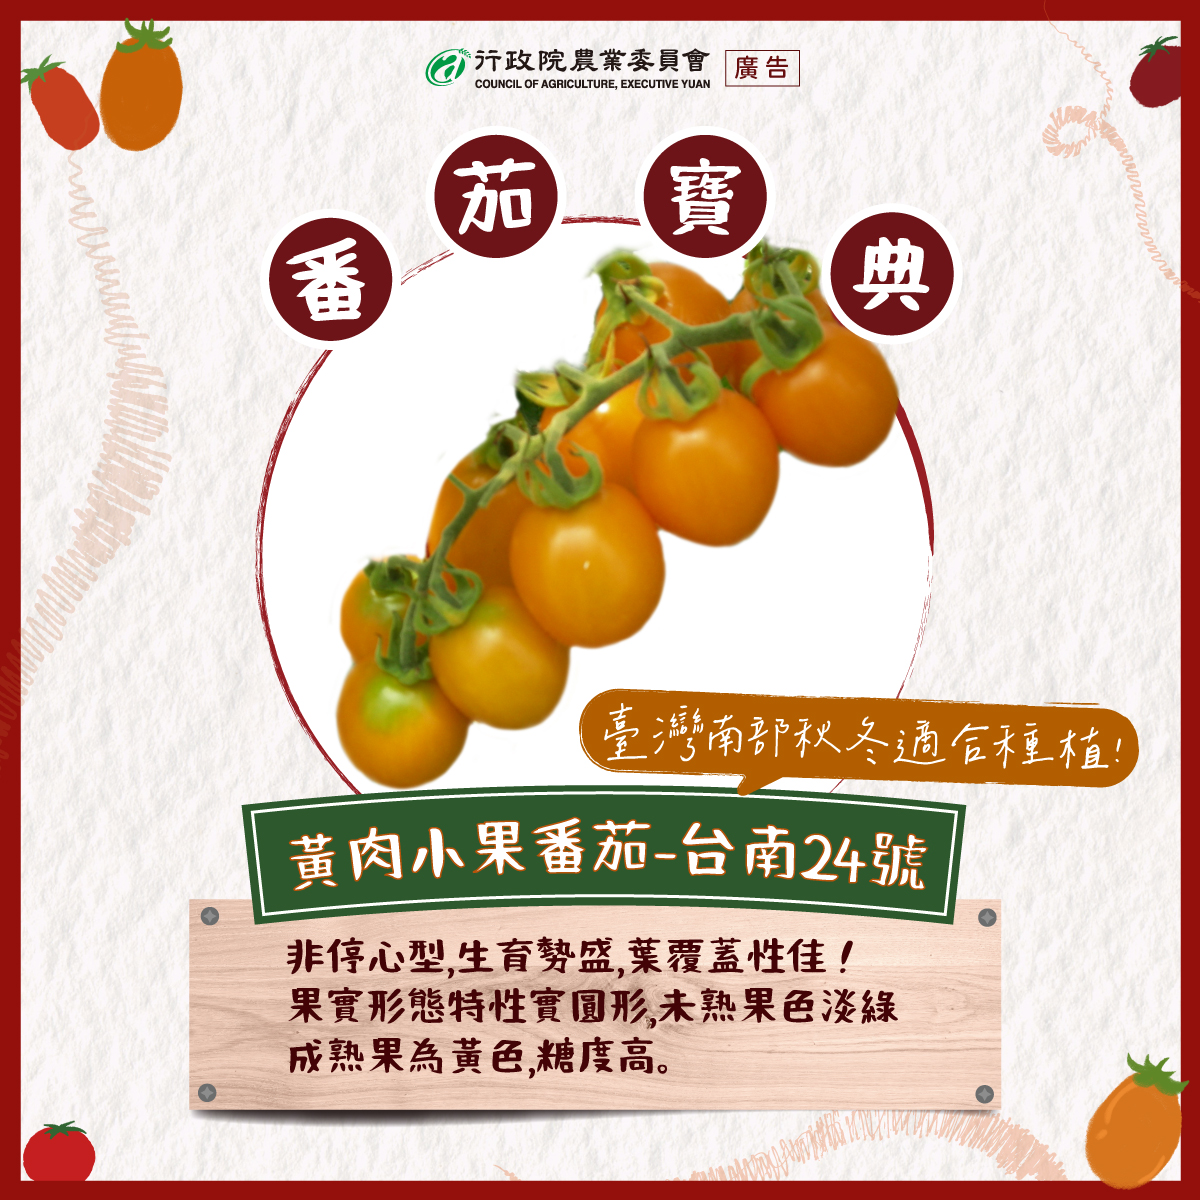 8.黃肉小果番茄-台南24號